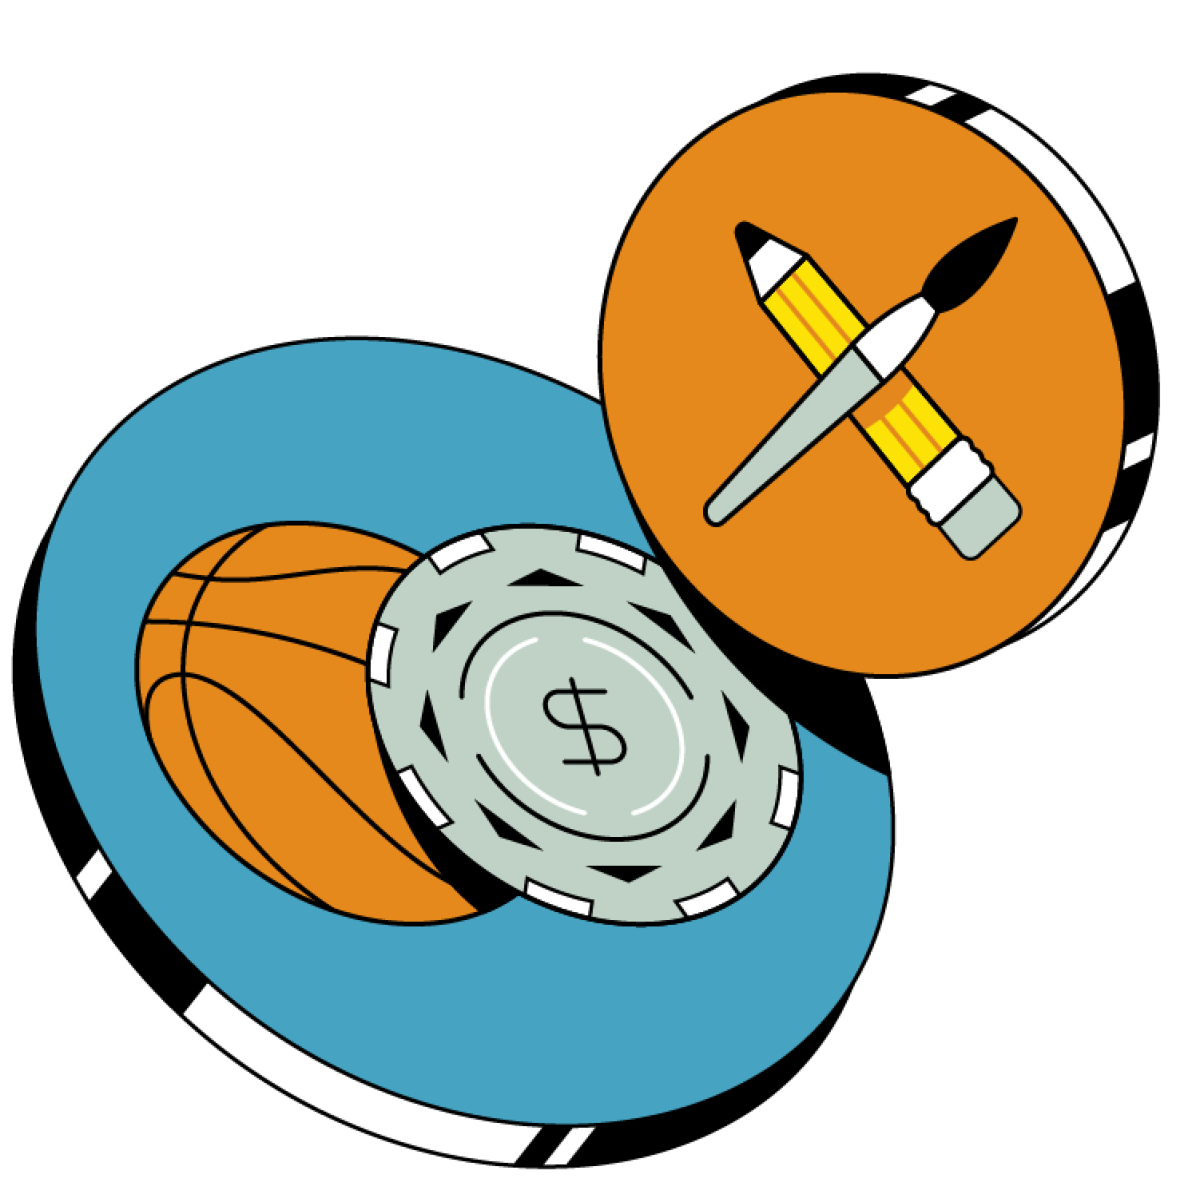 Ilustración de un balón de baloncesto con una ficha de póquer y un lápiz y un pincel.